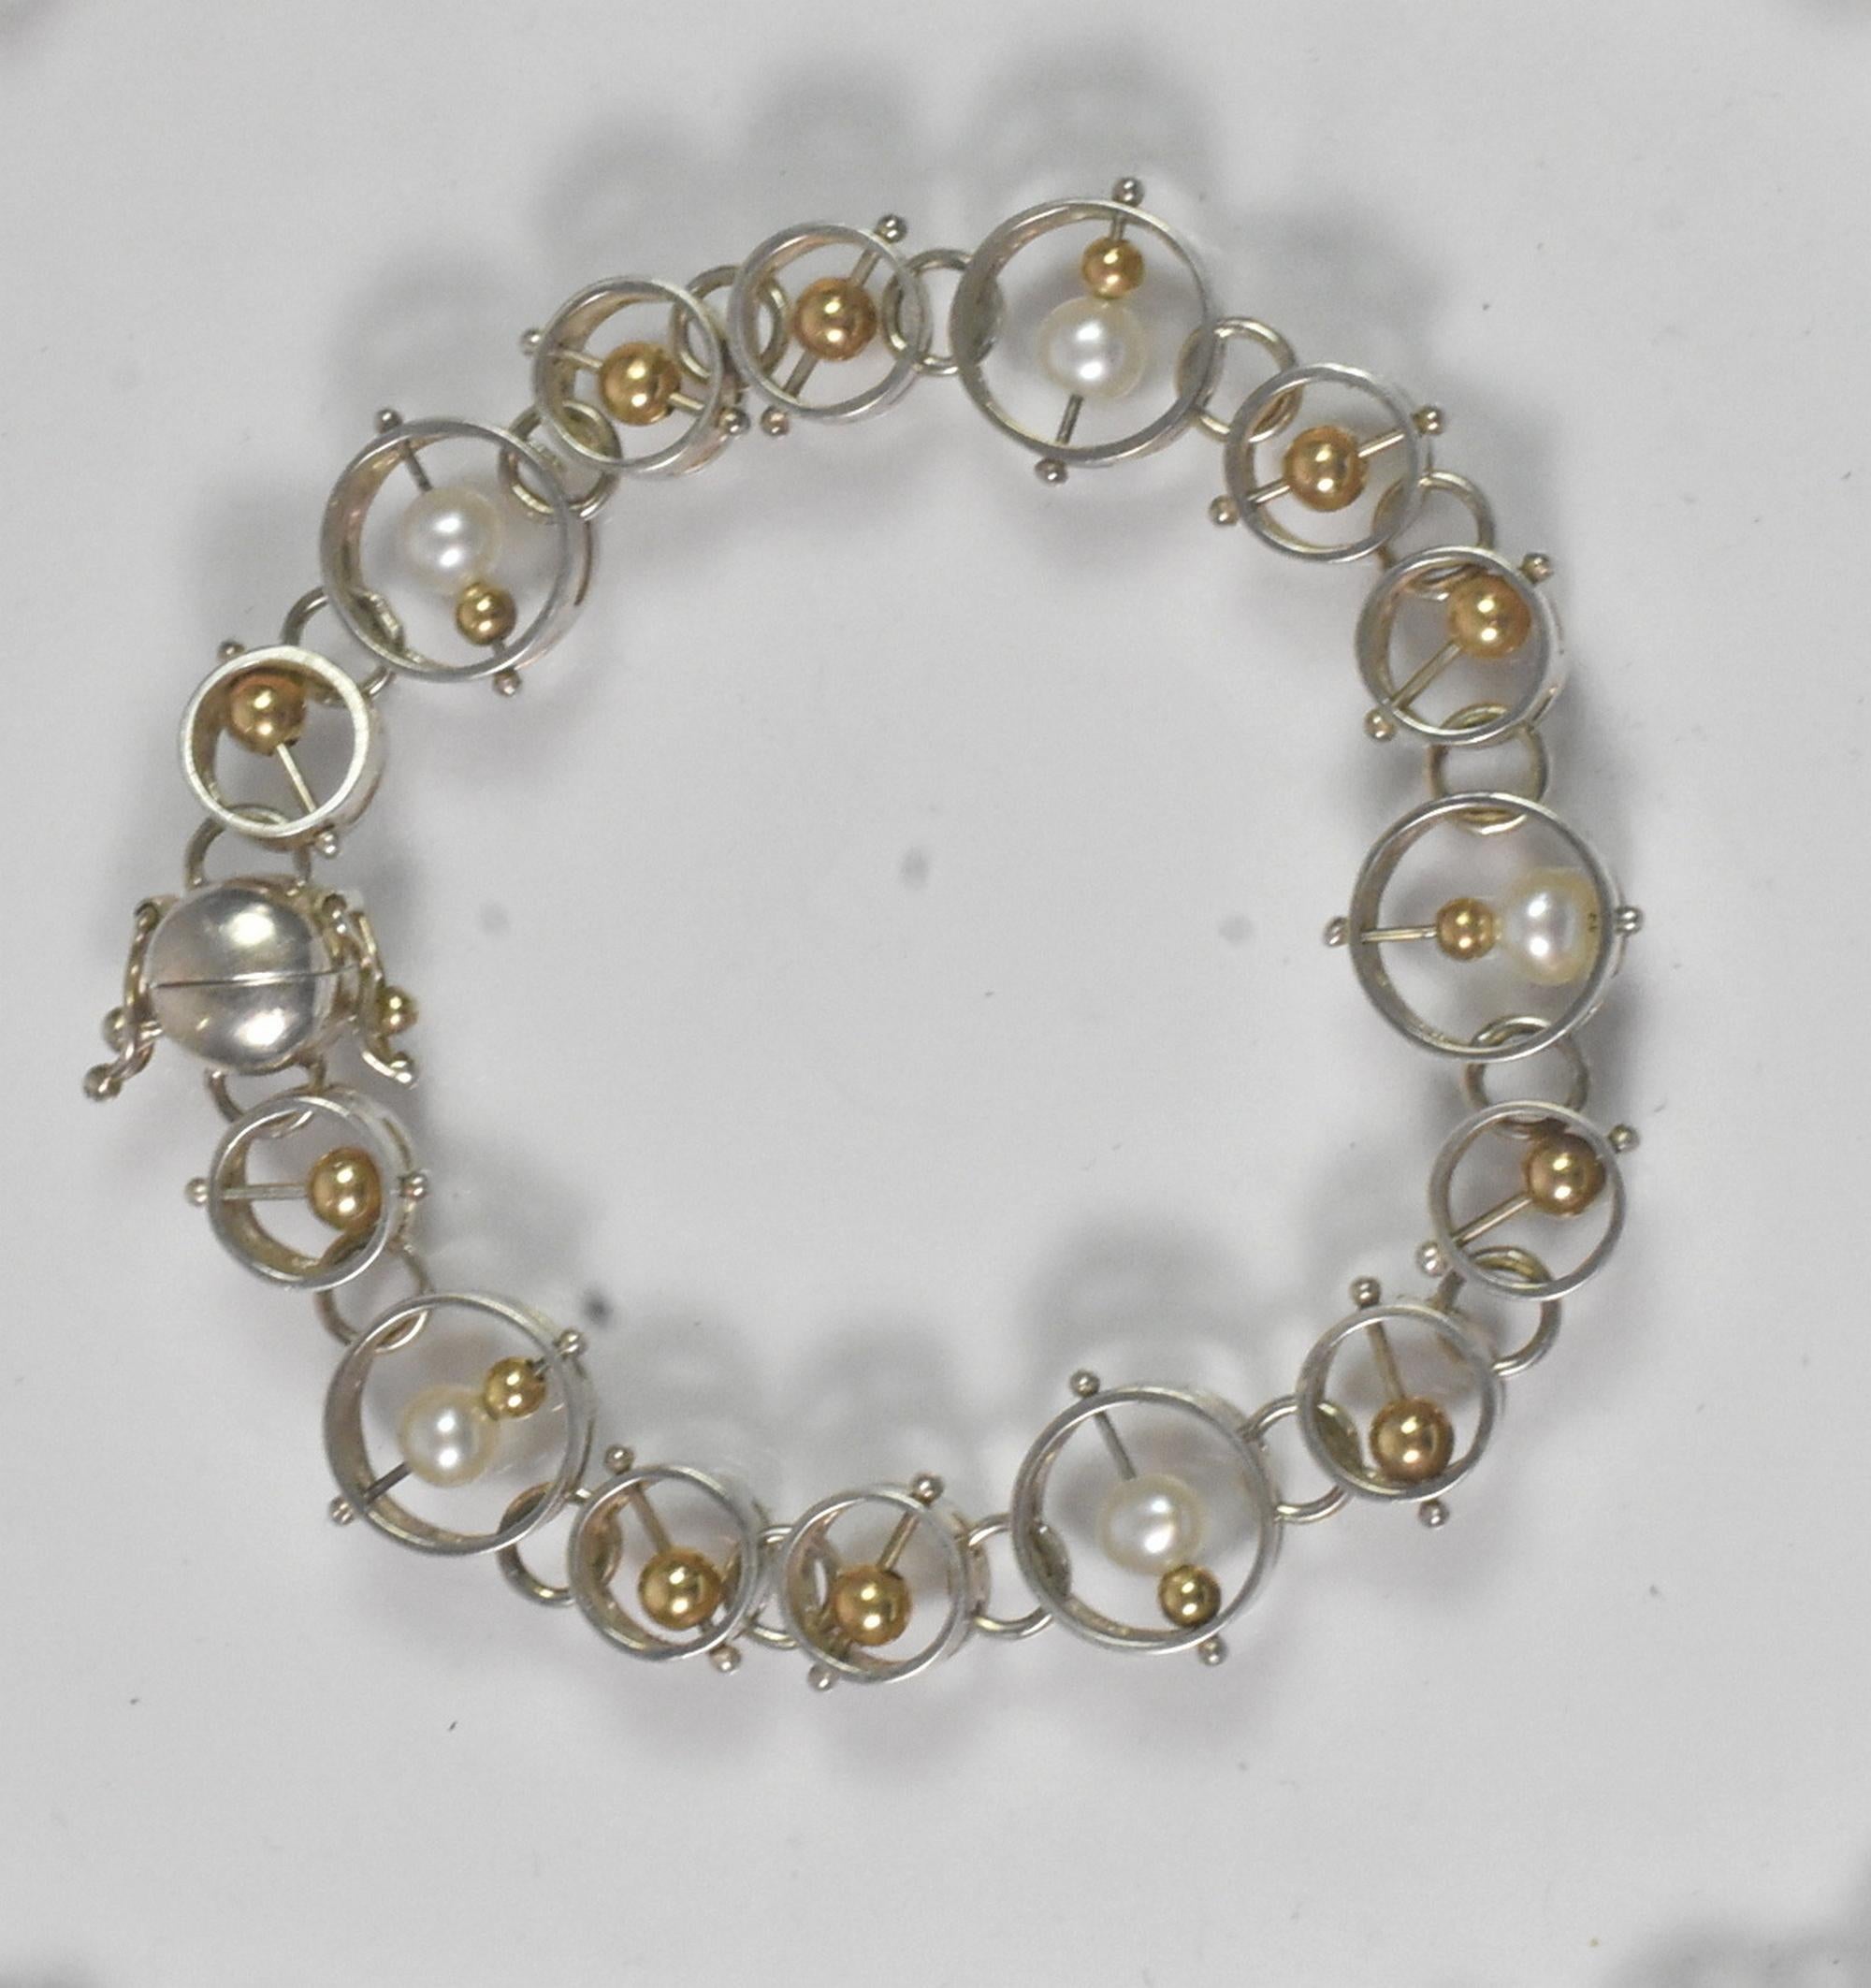 Vintage Dian Malouf (DLM) Sterling & 14k Gold modernistischen Halskette & Armband gesetzt. Seltene schwimmende 14K Gelbgold Perlen und Perlen in Kreisen von Sterling gesetzt. Das Armband wird mit einem Magneten und Verschlussklammern gehalten.